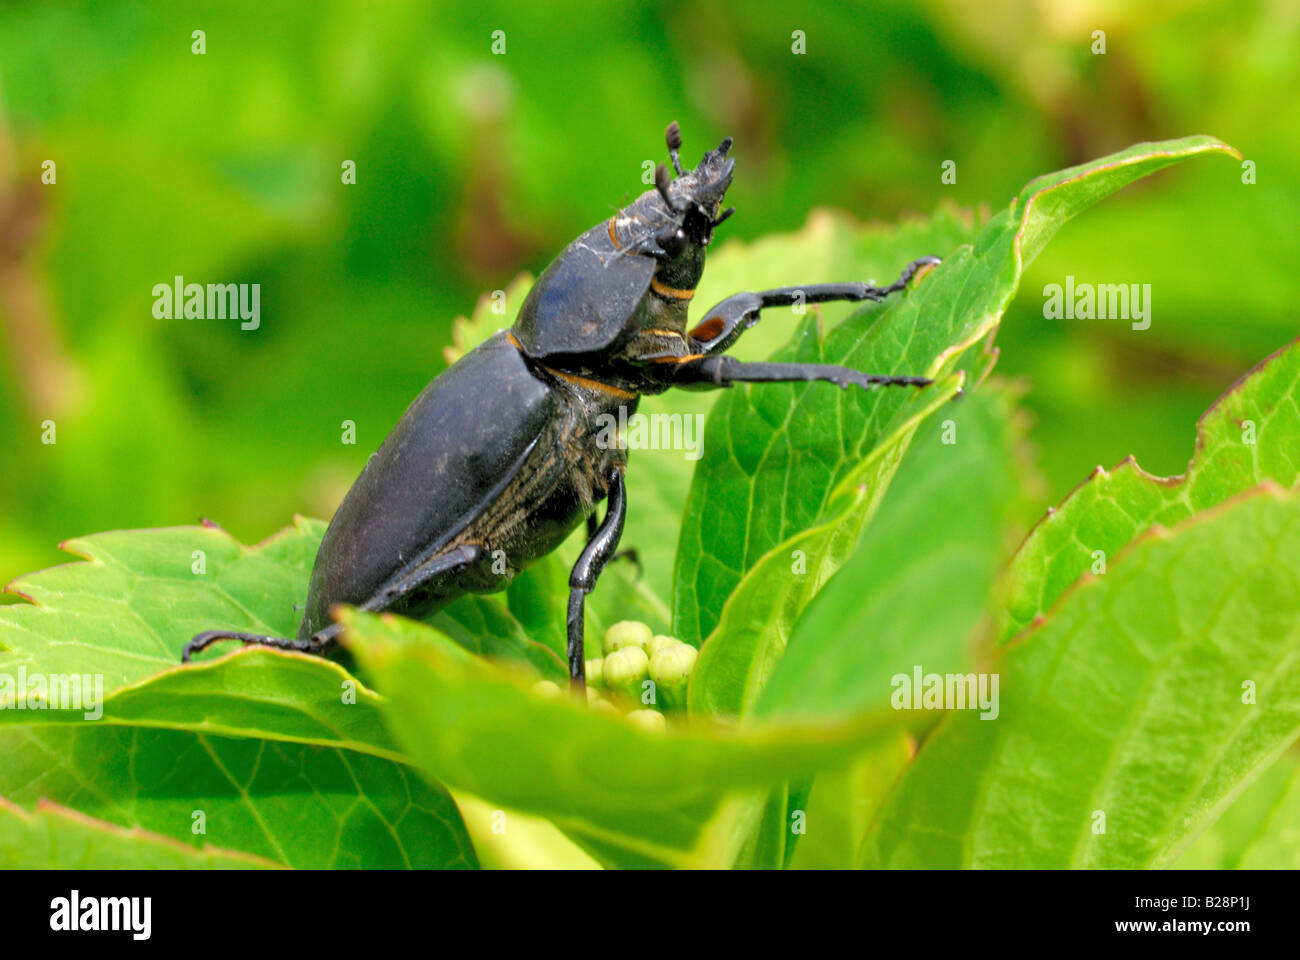 Stag beetle sur feuille verte Banque D'Images